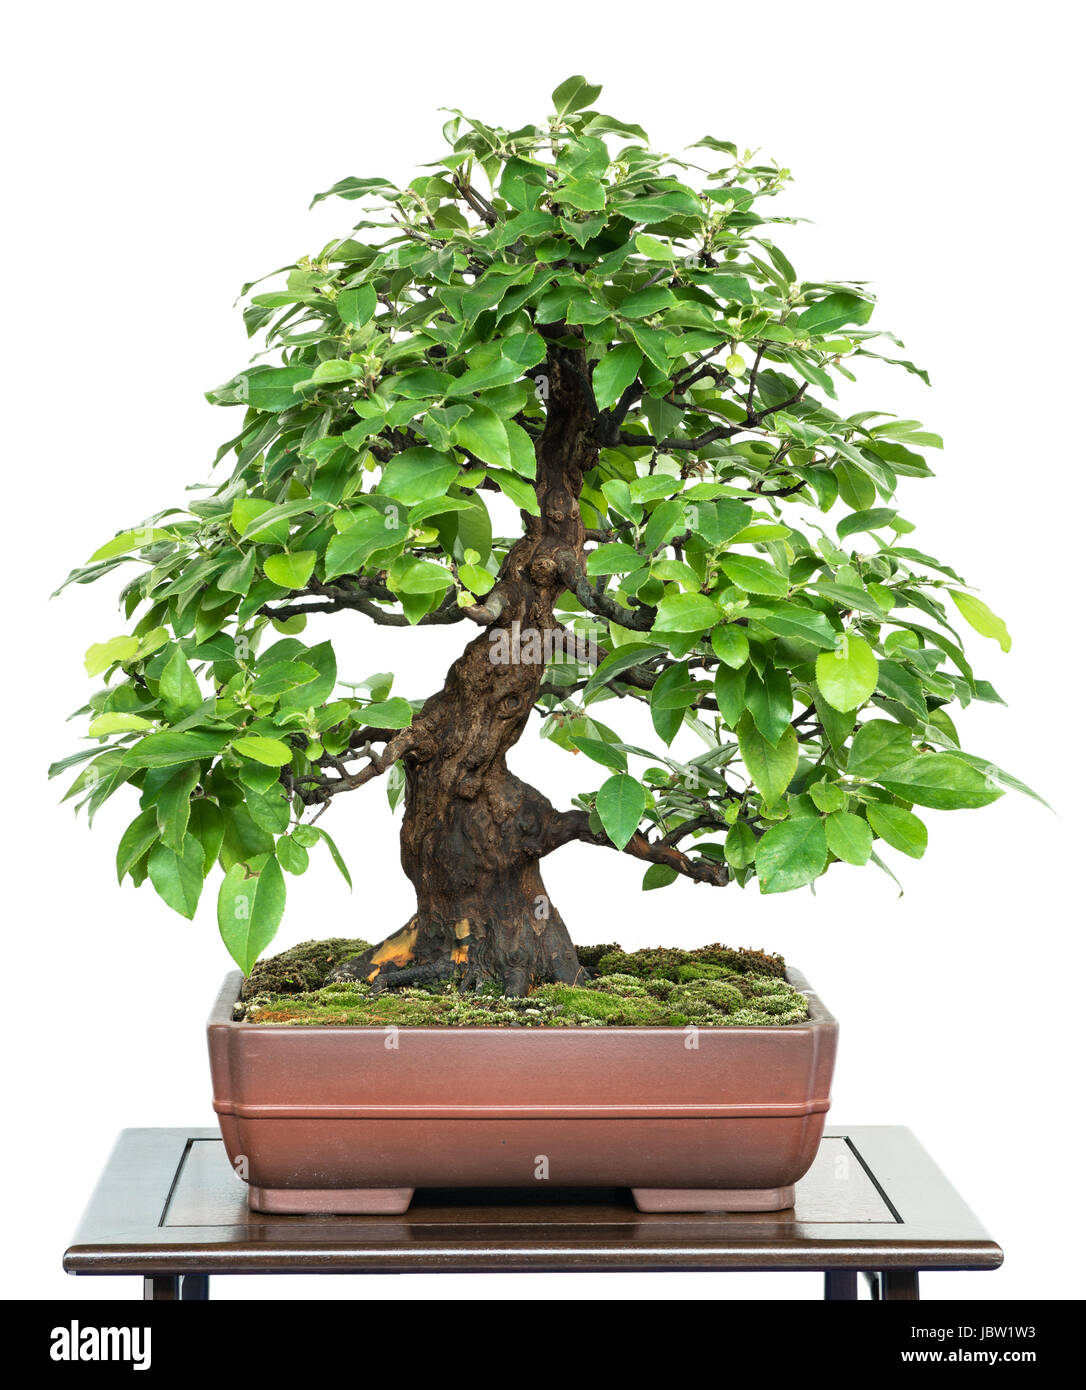 Chinesische Quitte als Bonsai Baum in einer Bonsaischale Stock Photo